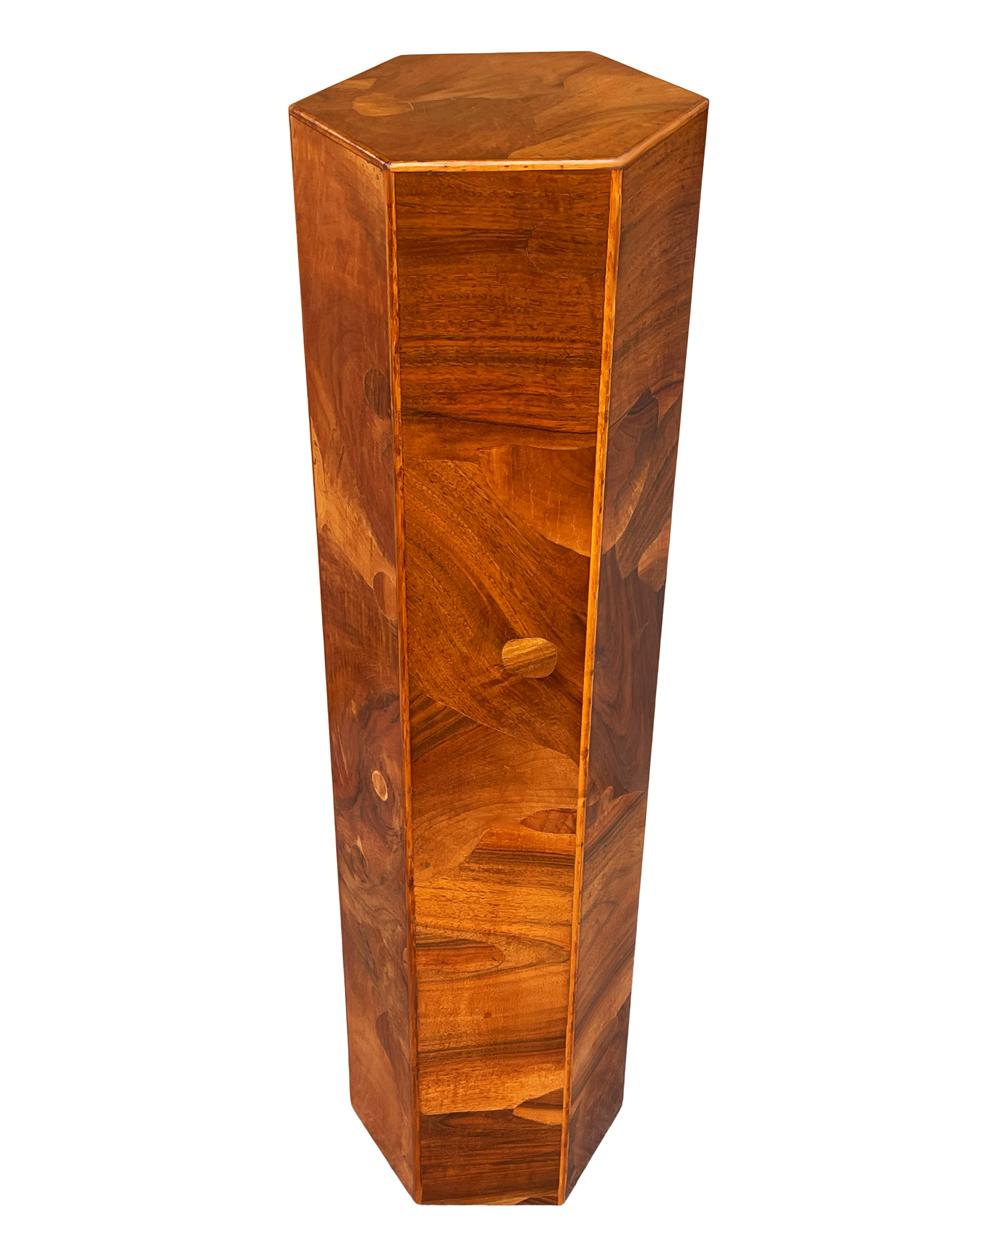 Un piédestal simple et élégant fabriqué en Italie vers les années 1960. Il se compose de différents placages de bois de ronce sur une forme hexagonale. Très propre et prêt à l'emploi.